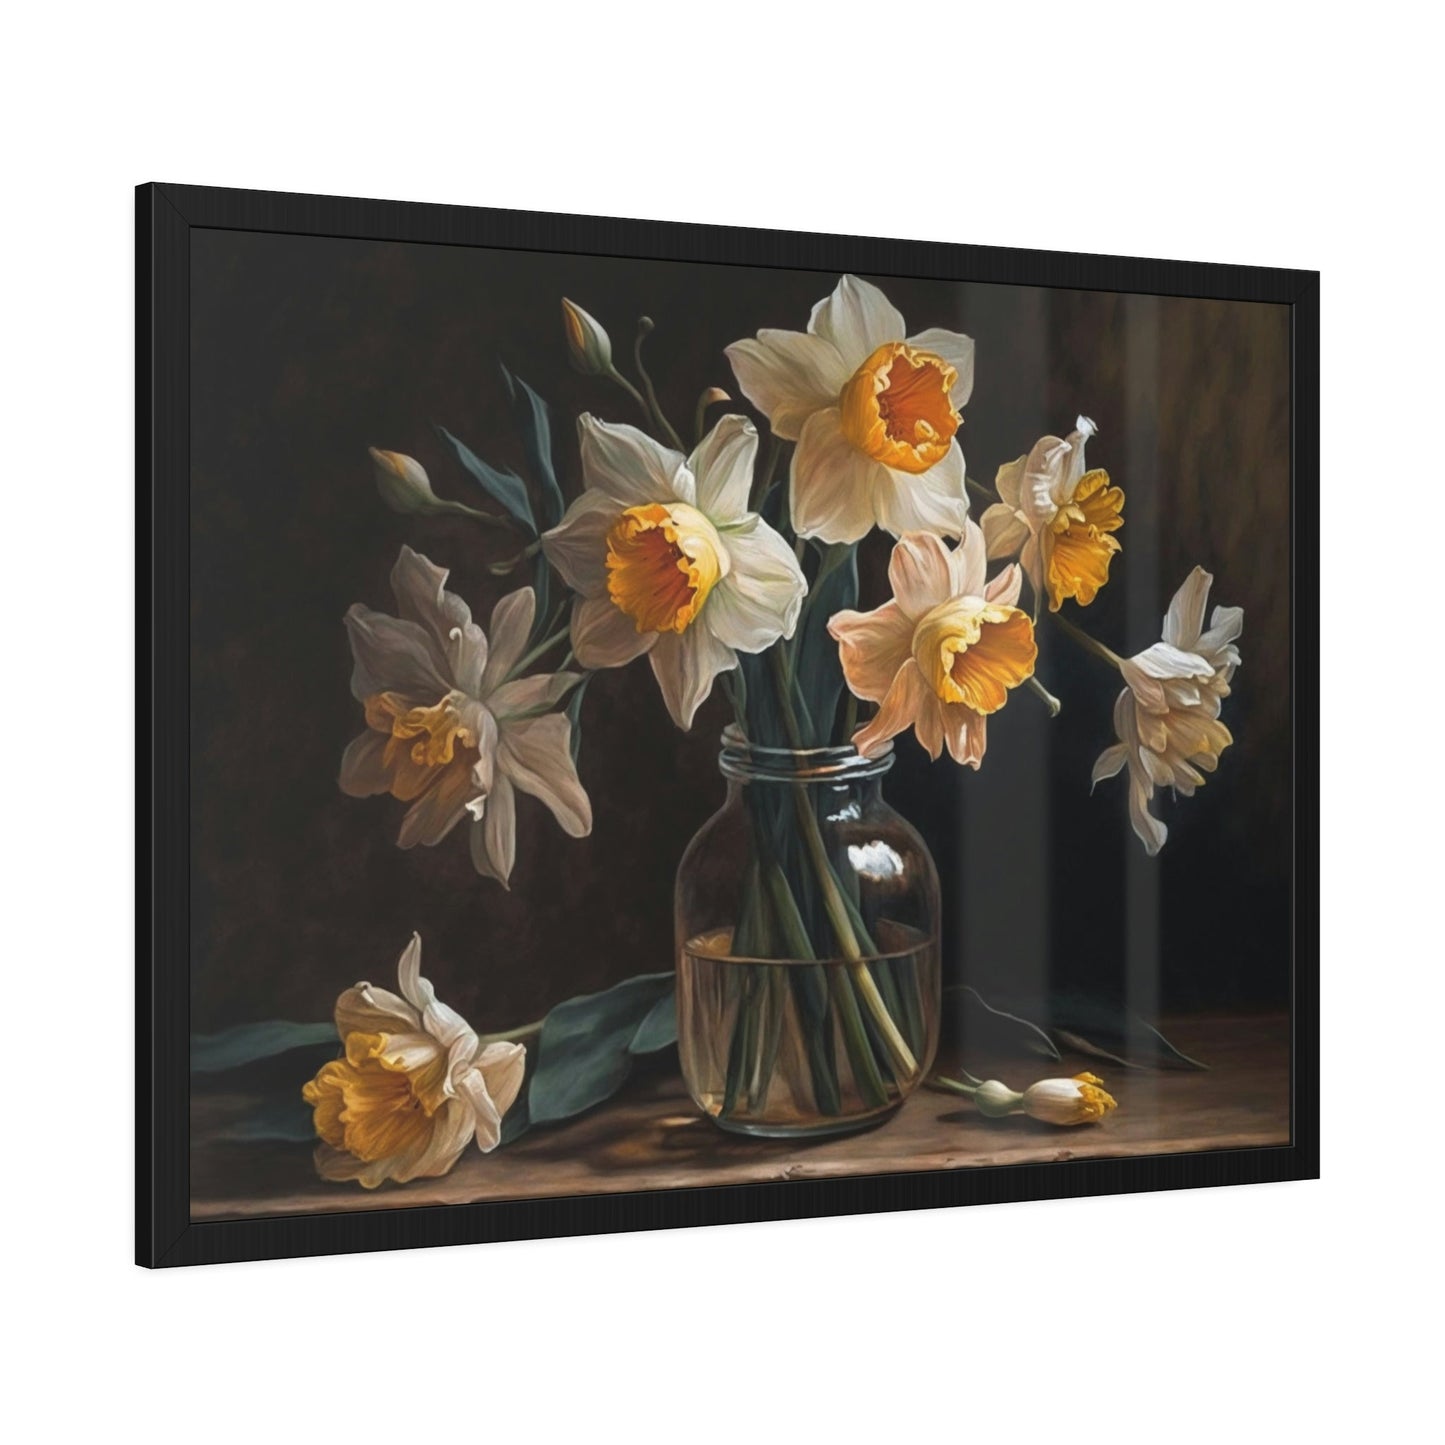 Daffodil Radiance: A Glowing Wonder